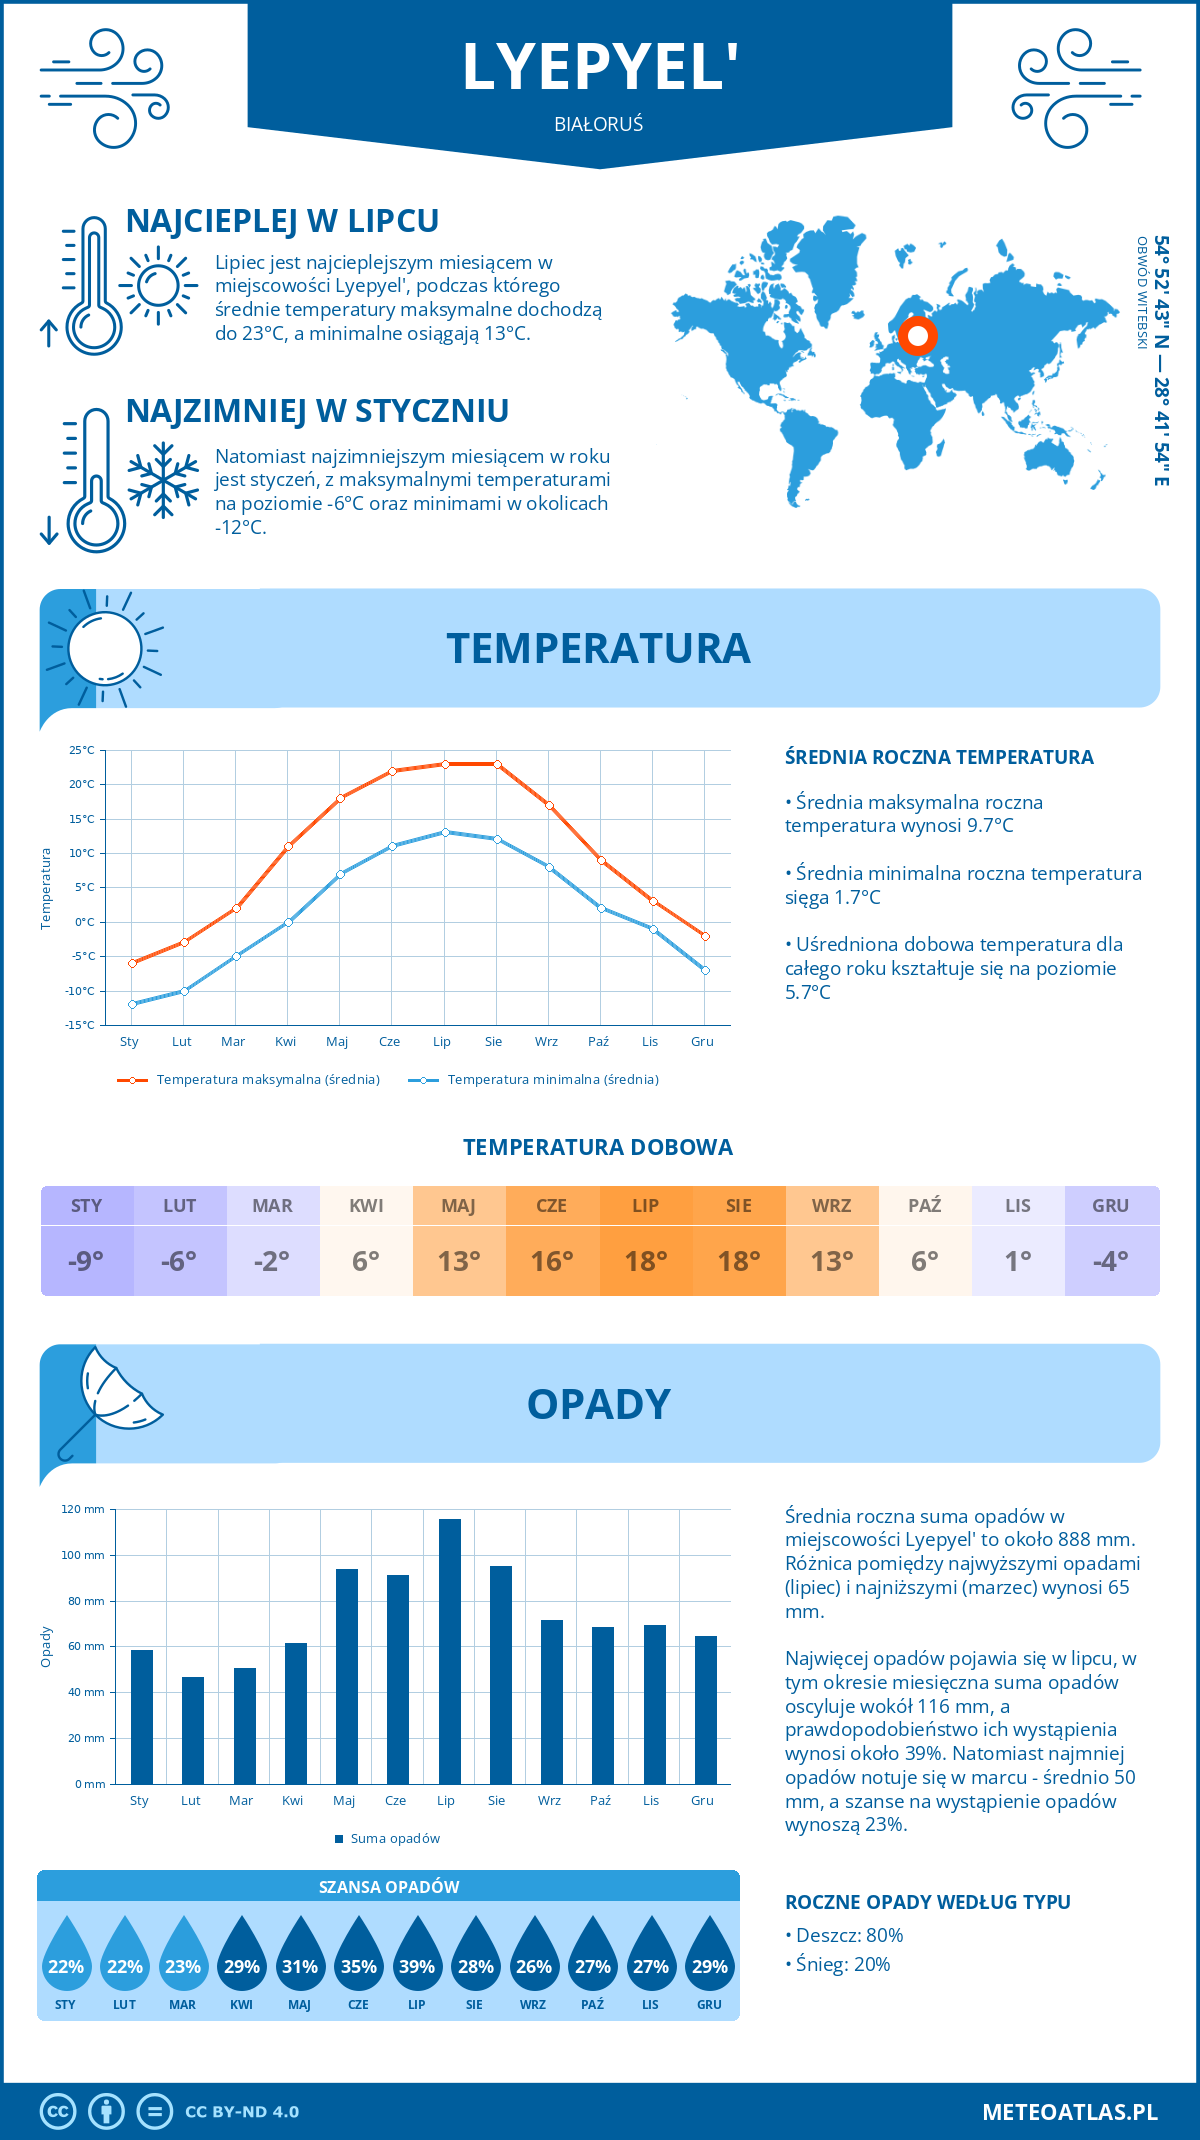 Pogoda Lyepyel' (Białoruś). Temperatura oraz opady.